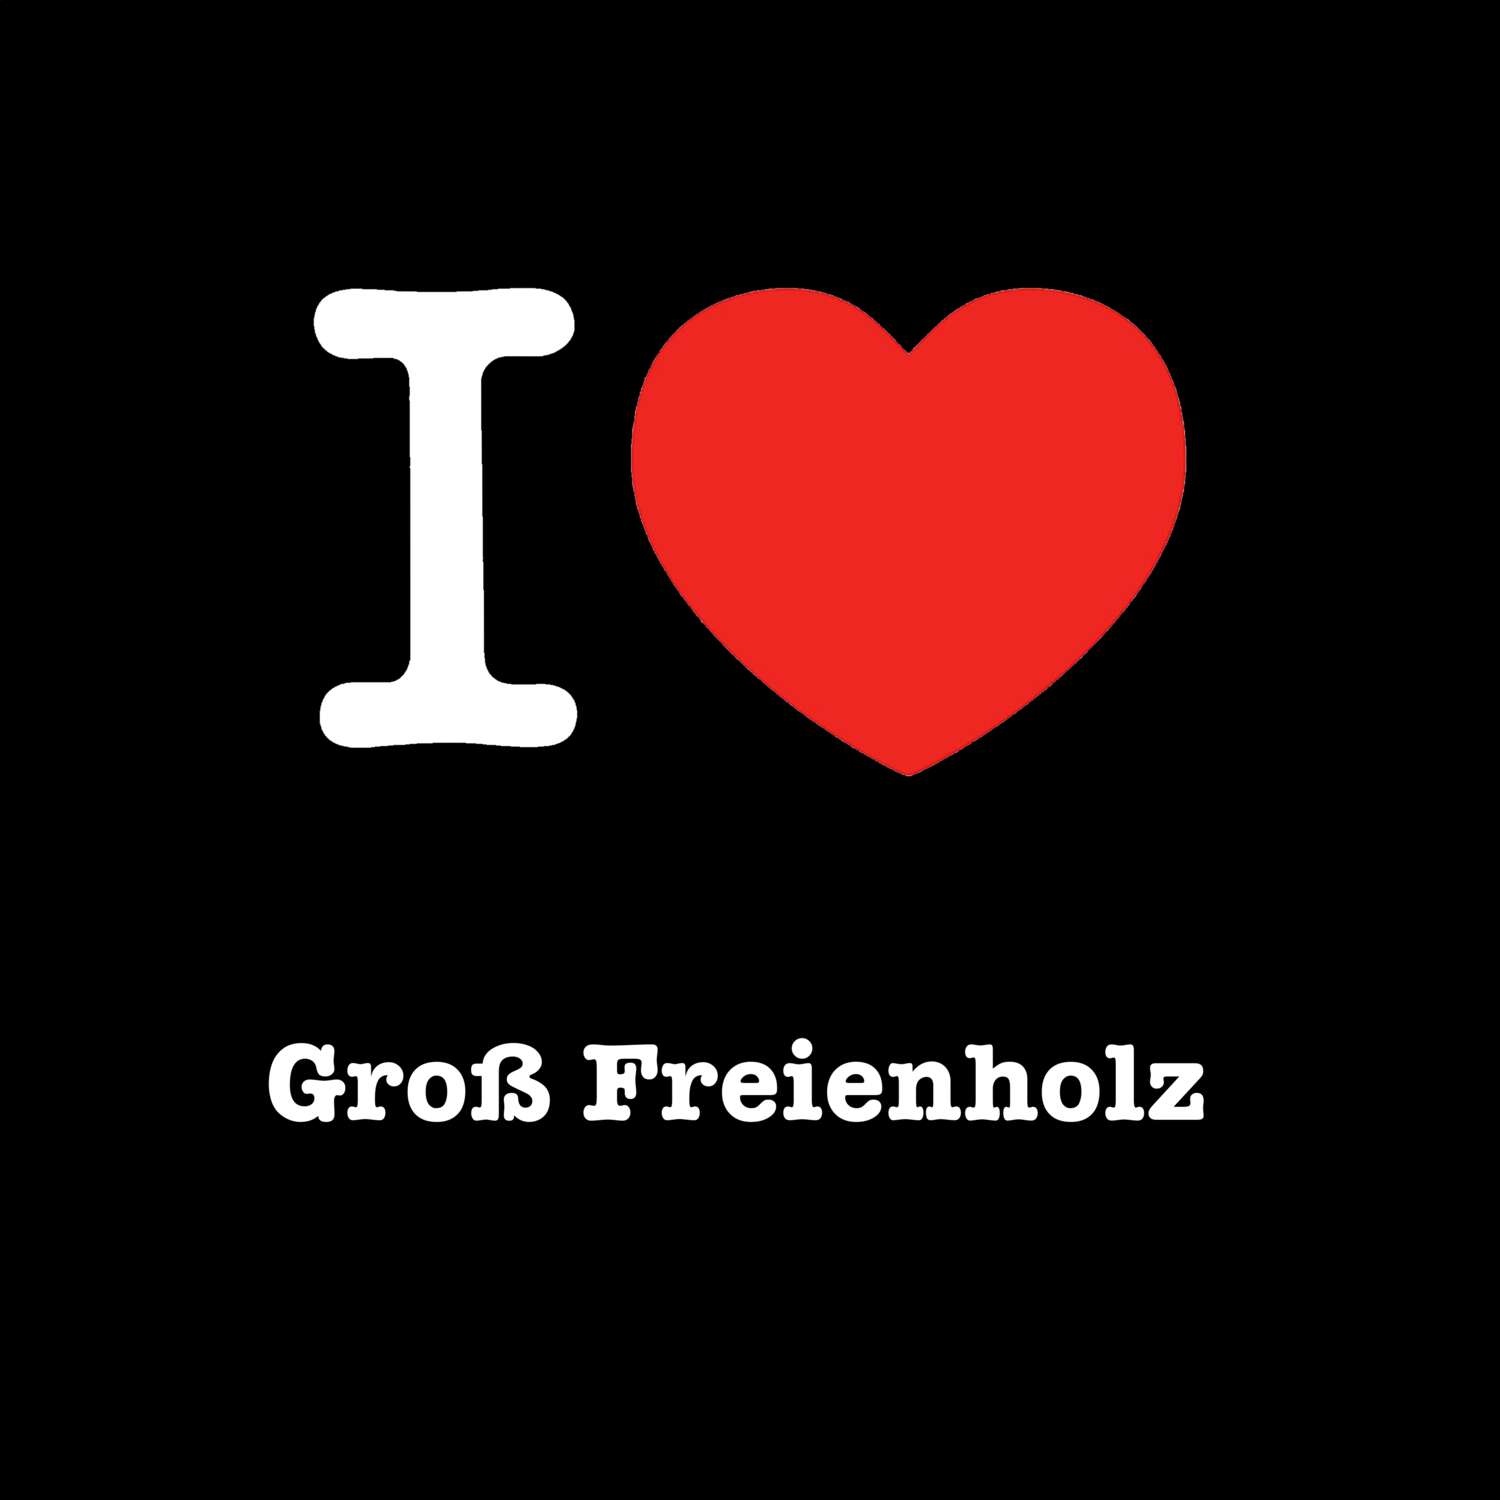 Groß Freienholz T-Shirt »I love«